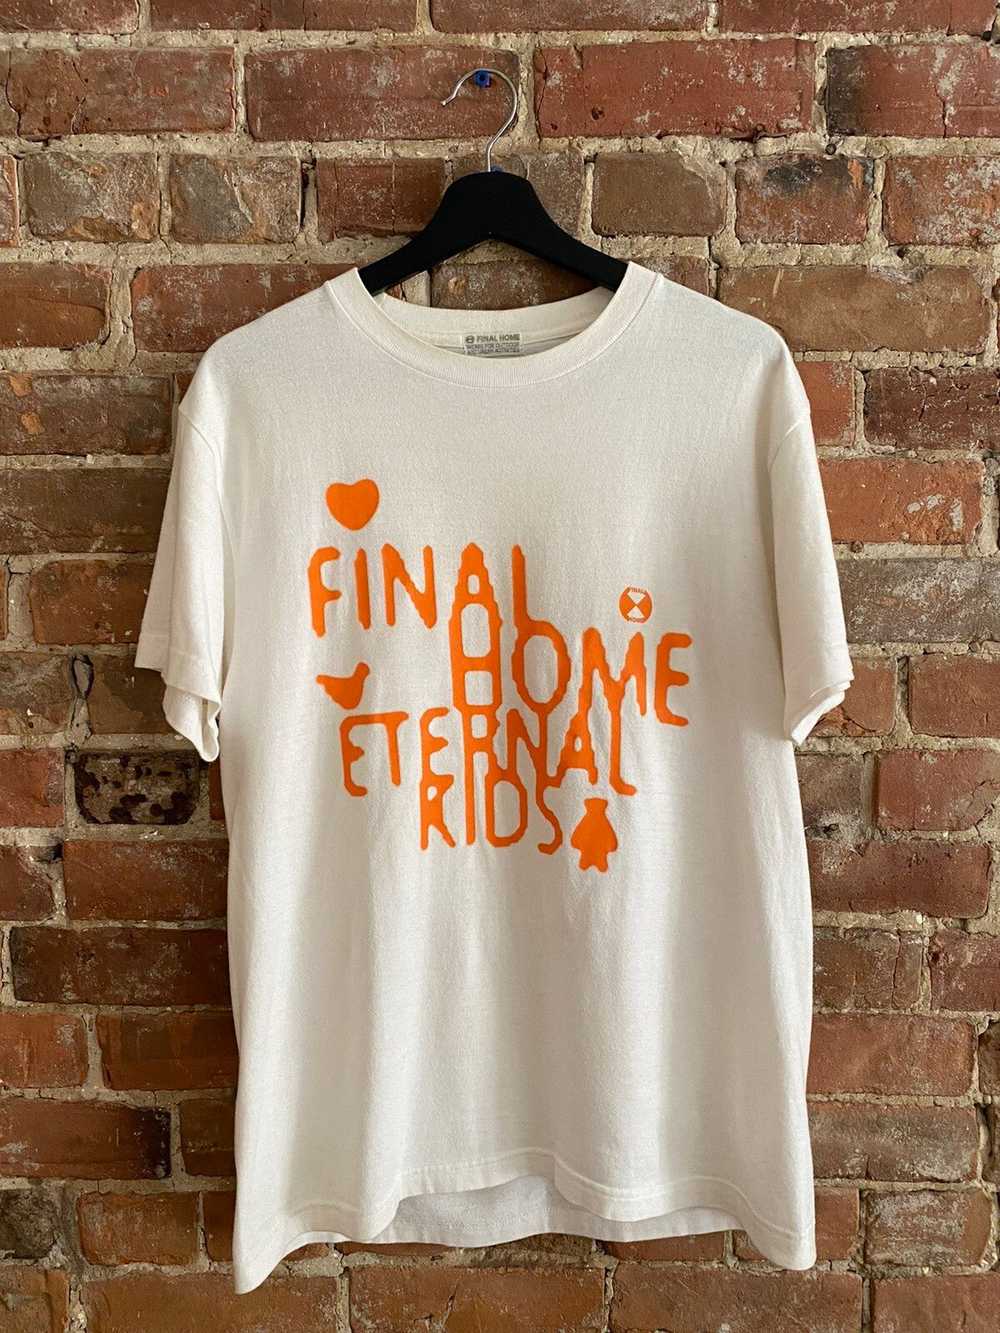 Final Home Eternal Kids T-Shirt - image 1